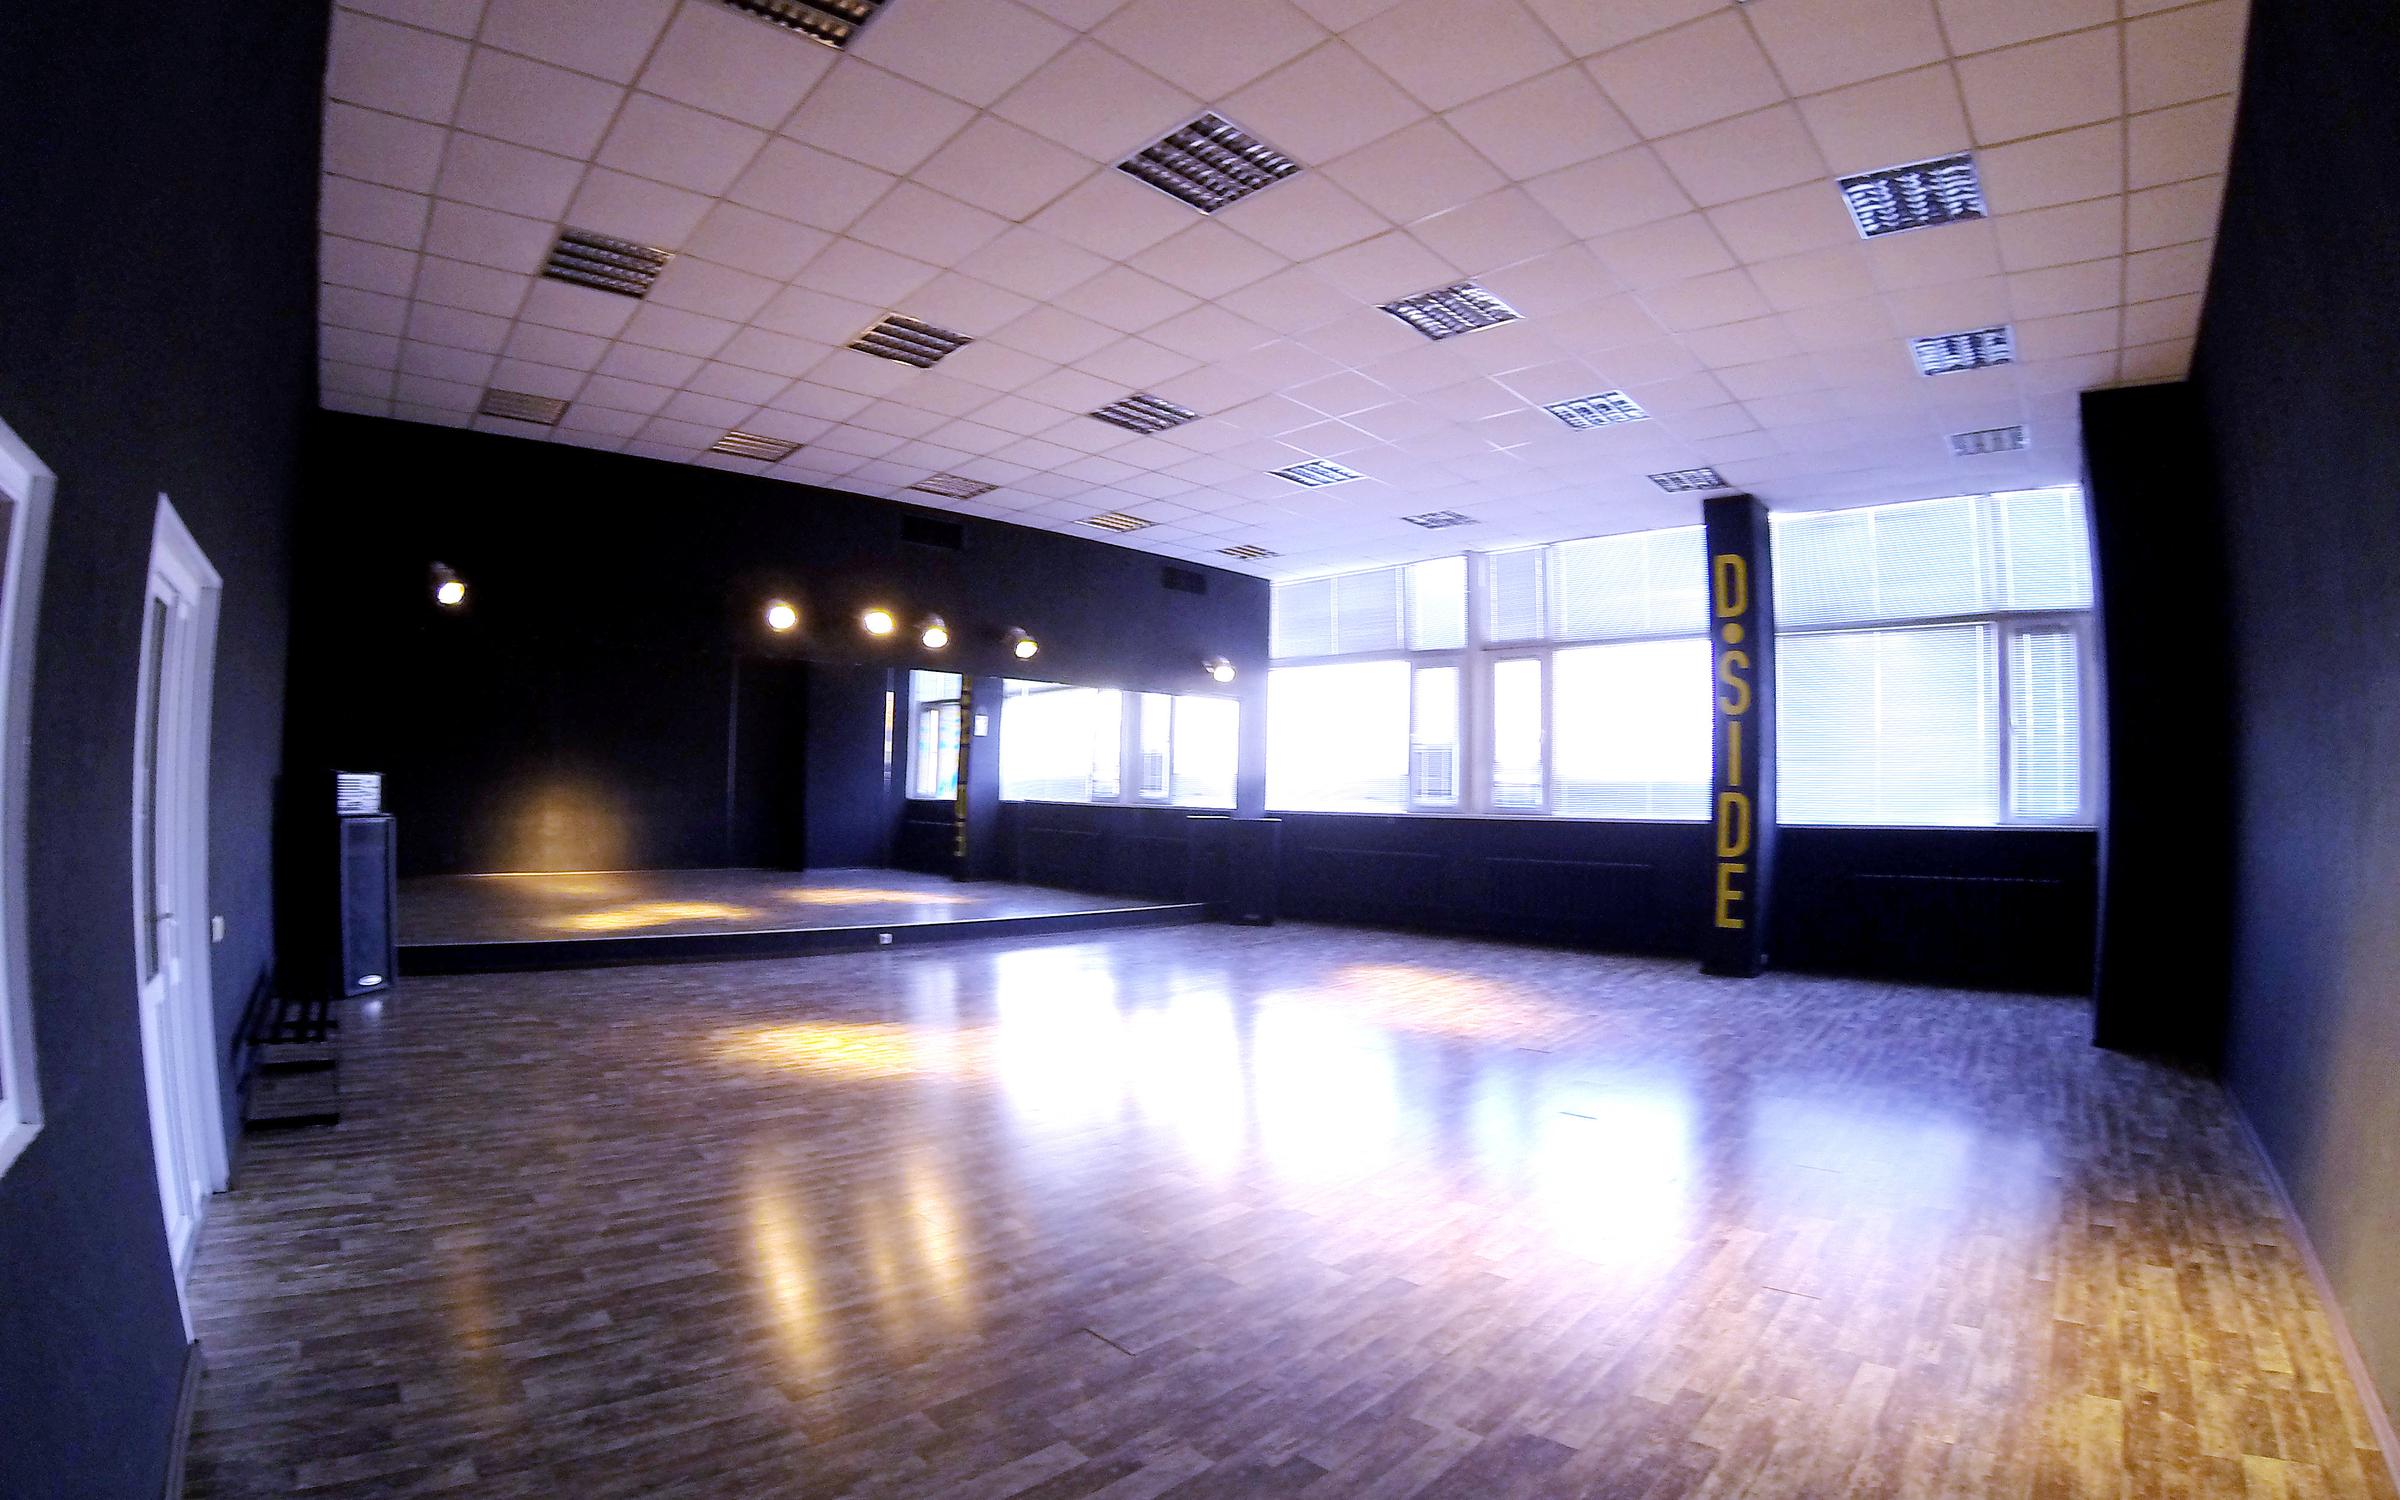 Включи зал 100. Танцевальные залы. Новый танцевальный зал. Танцевальный зал темный. Черный танцевальный зал.